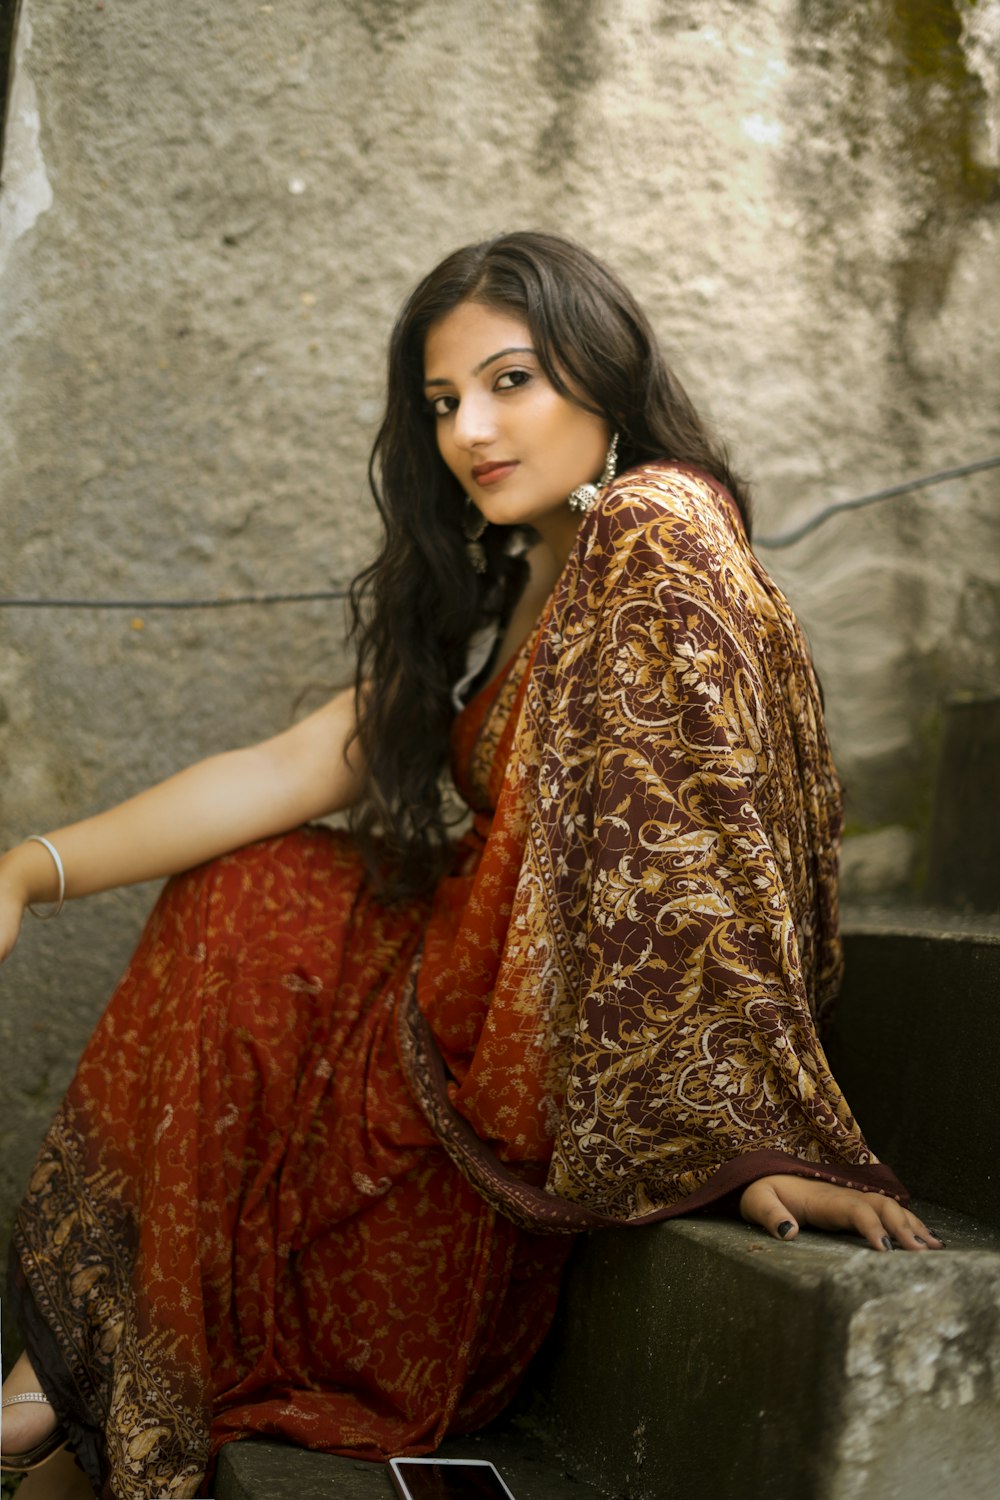 Femme en robe de sari rouge et or assise sur des escaliers en béton gris